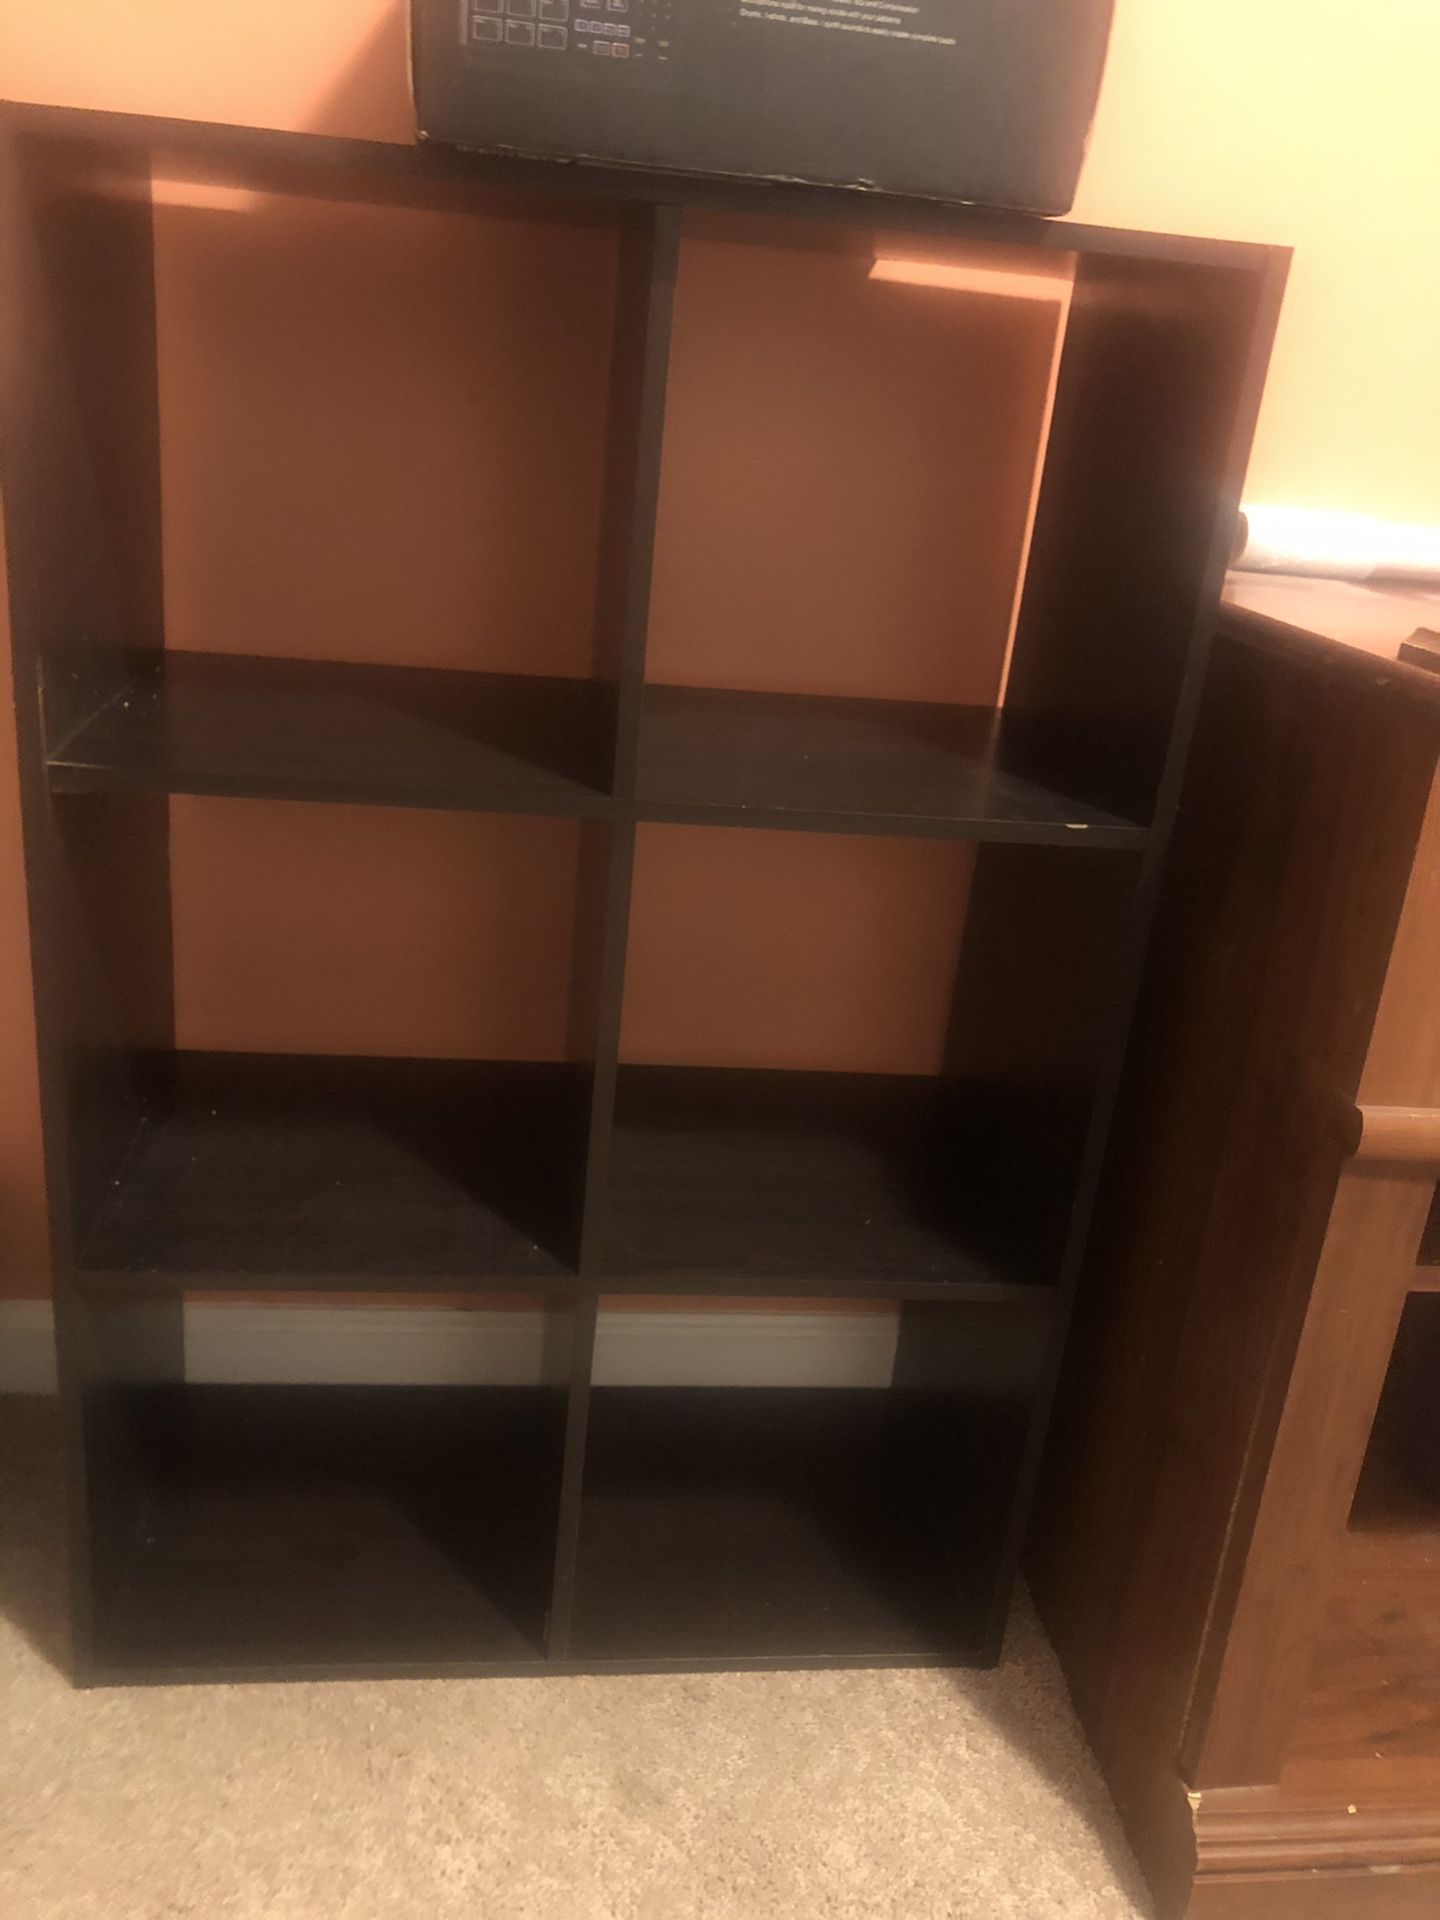 6 cube organizer shelf